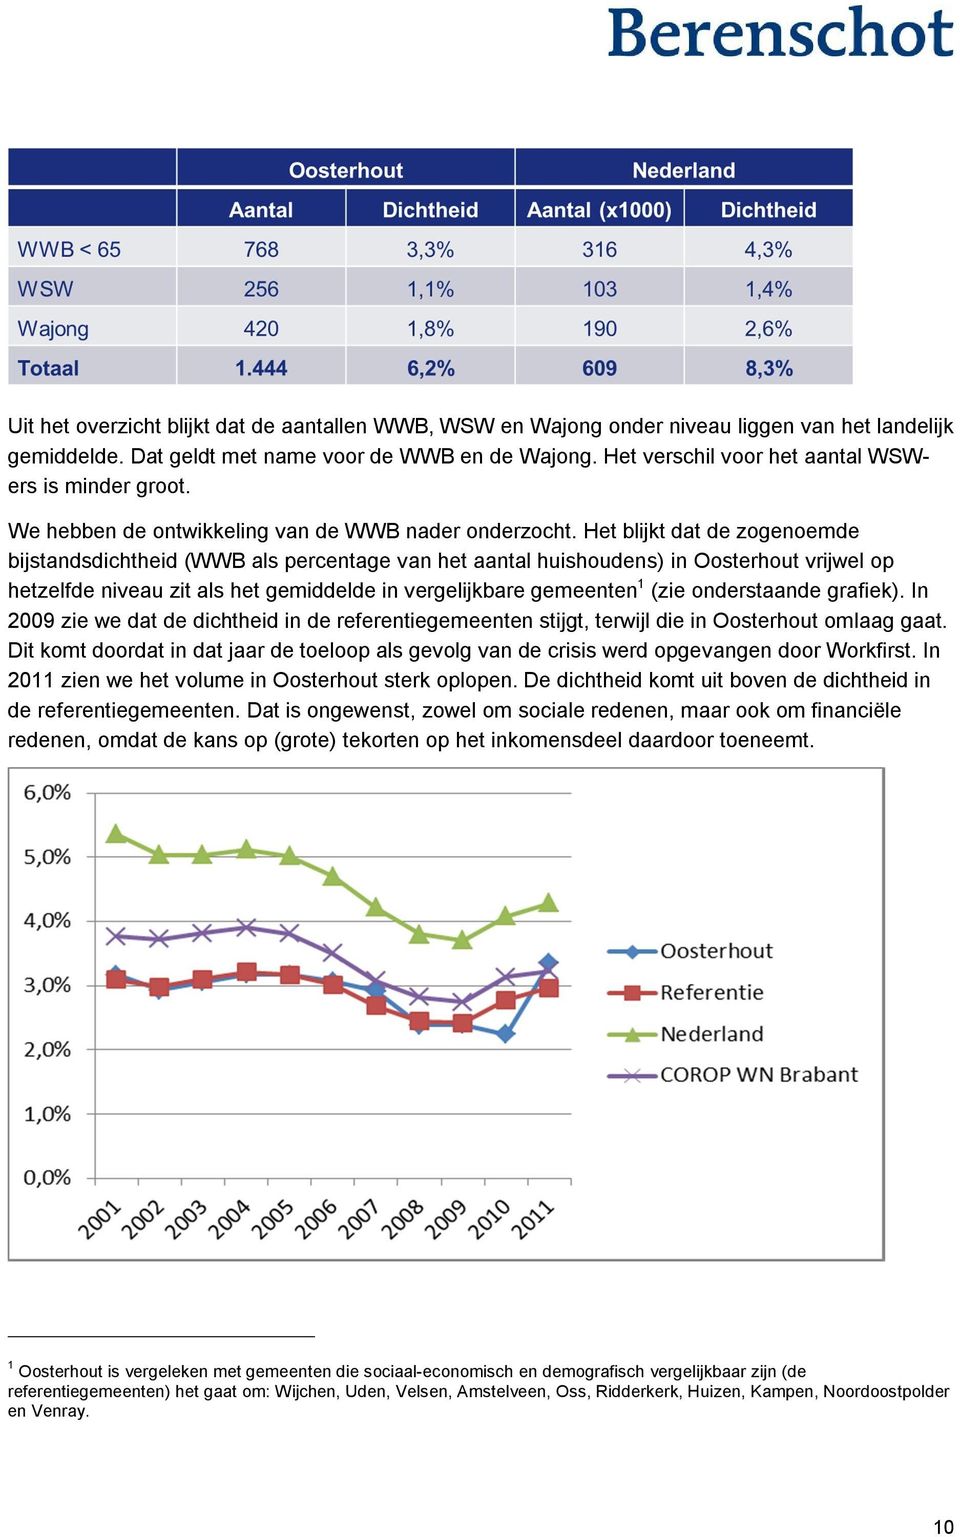 Het blijkt dat de zogenoemde bijstandsdichtheid (WWB als percentage van het aantal huishoudens) in Oosterhout vrijwel op hetzelfde niveau zit als het gemiddelde in vergelijkbare gemeenten 1 (zie